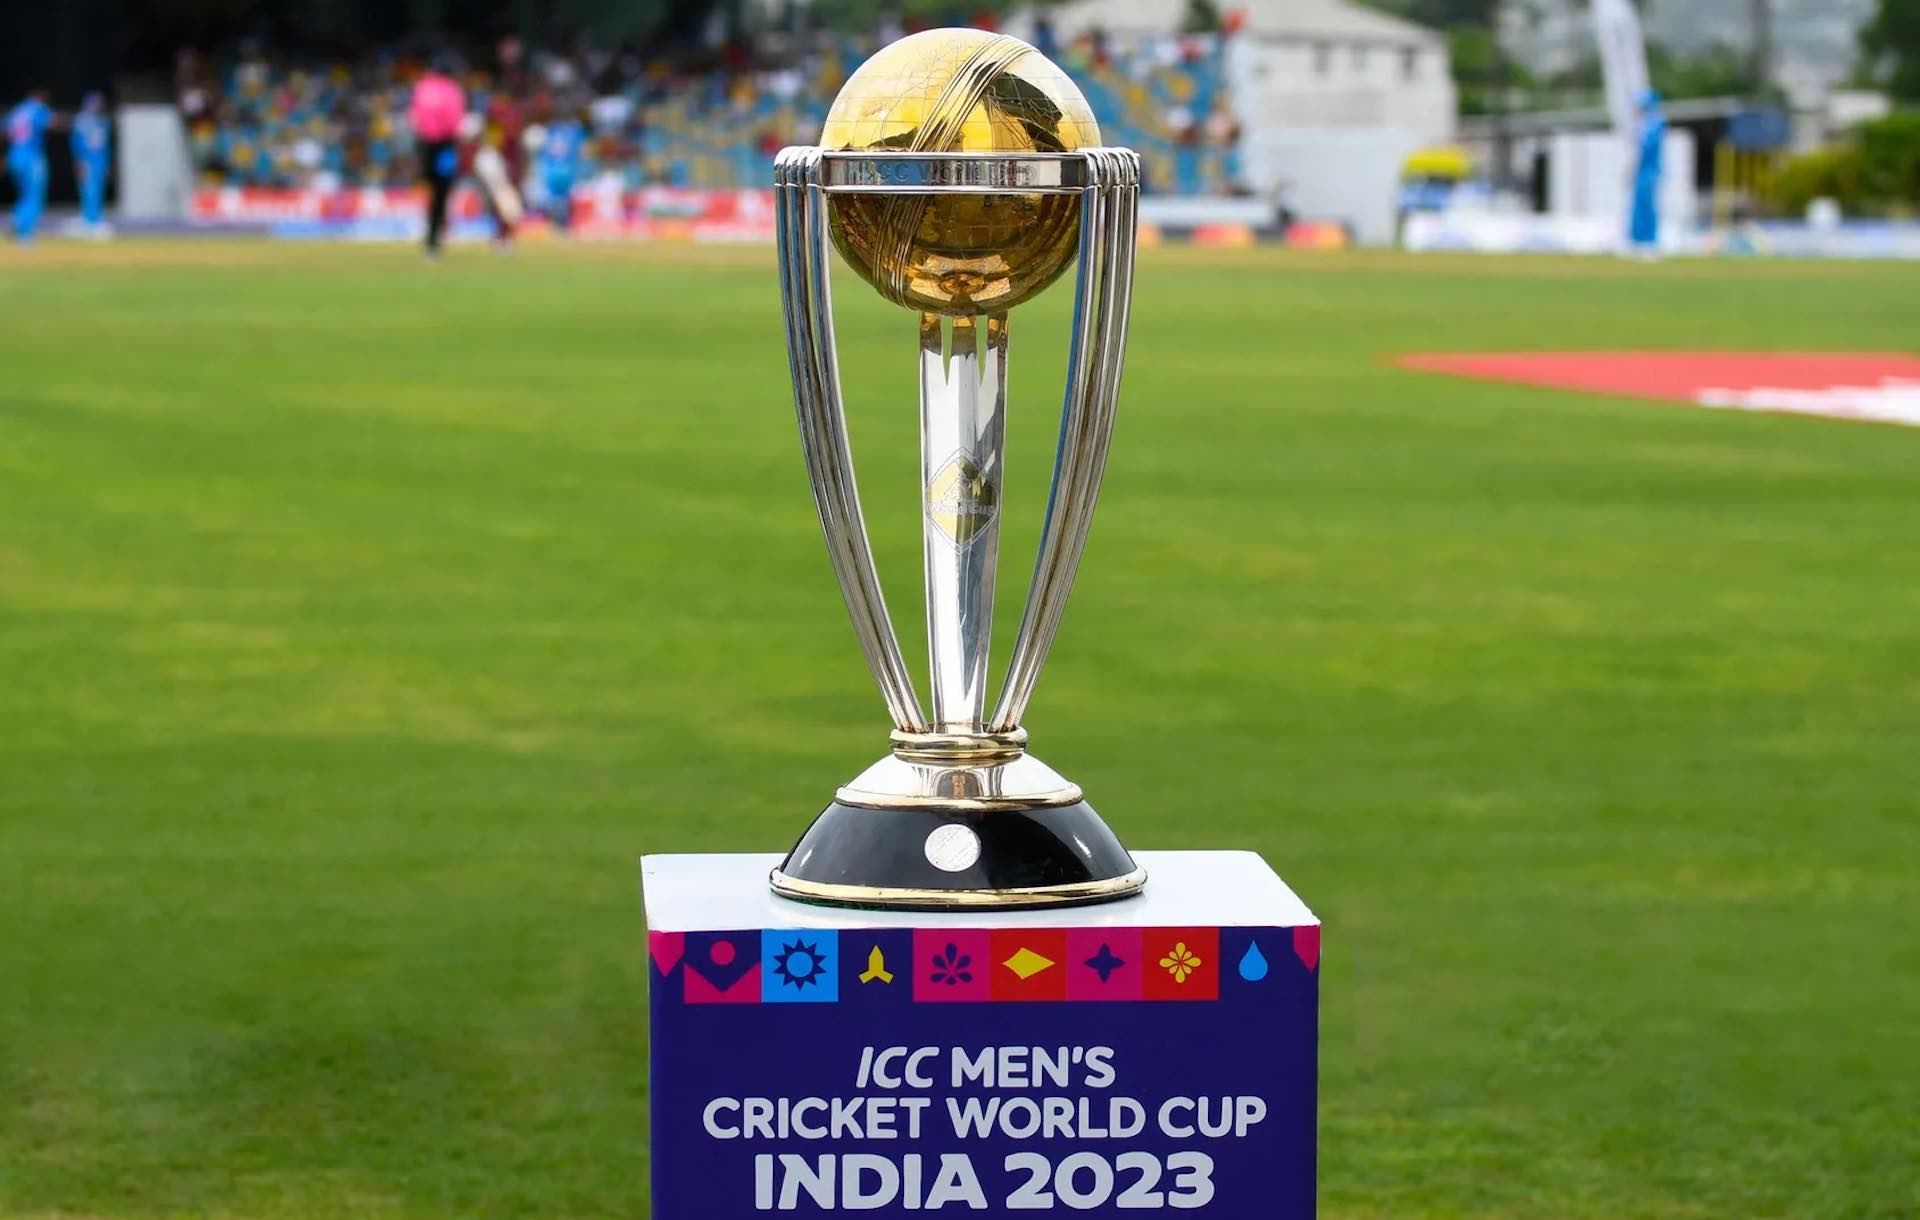 La bataille d'élite du cricket pour la gloire et 10 millions de dollars lors de la Coupe du monde ICC 2023